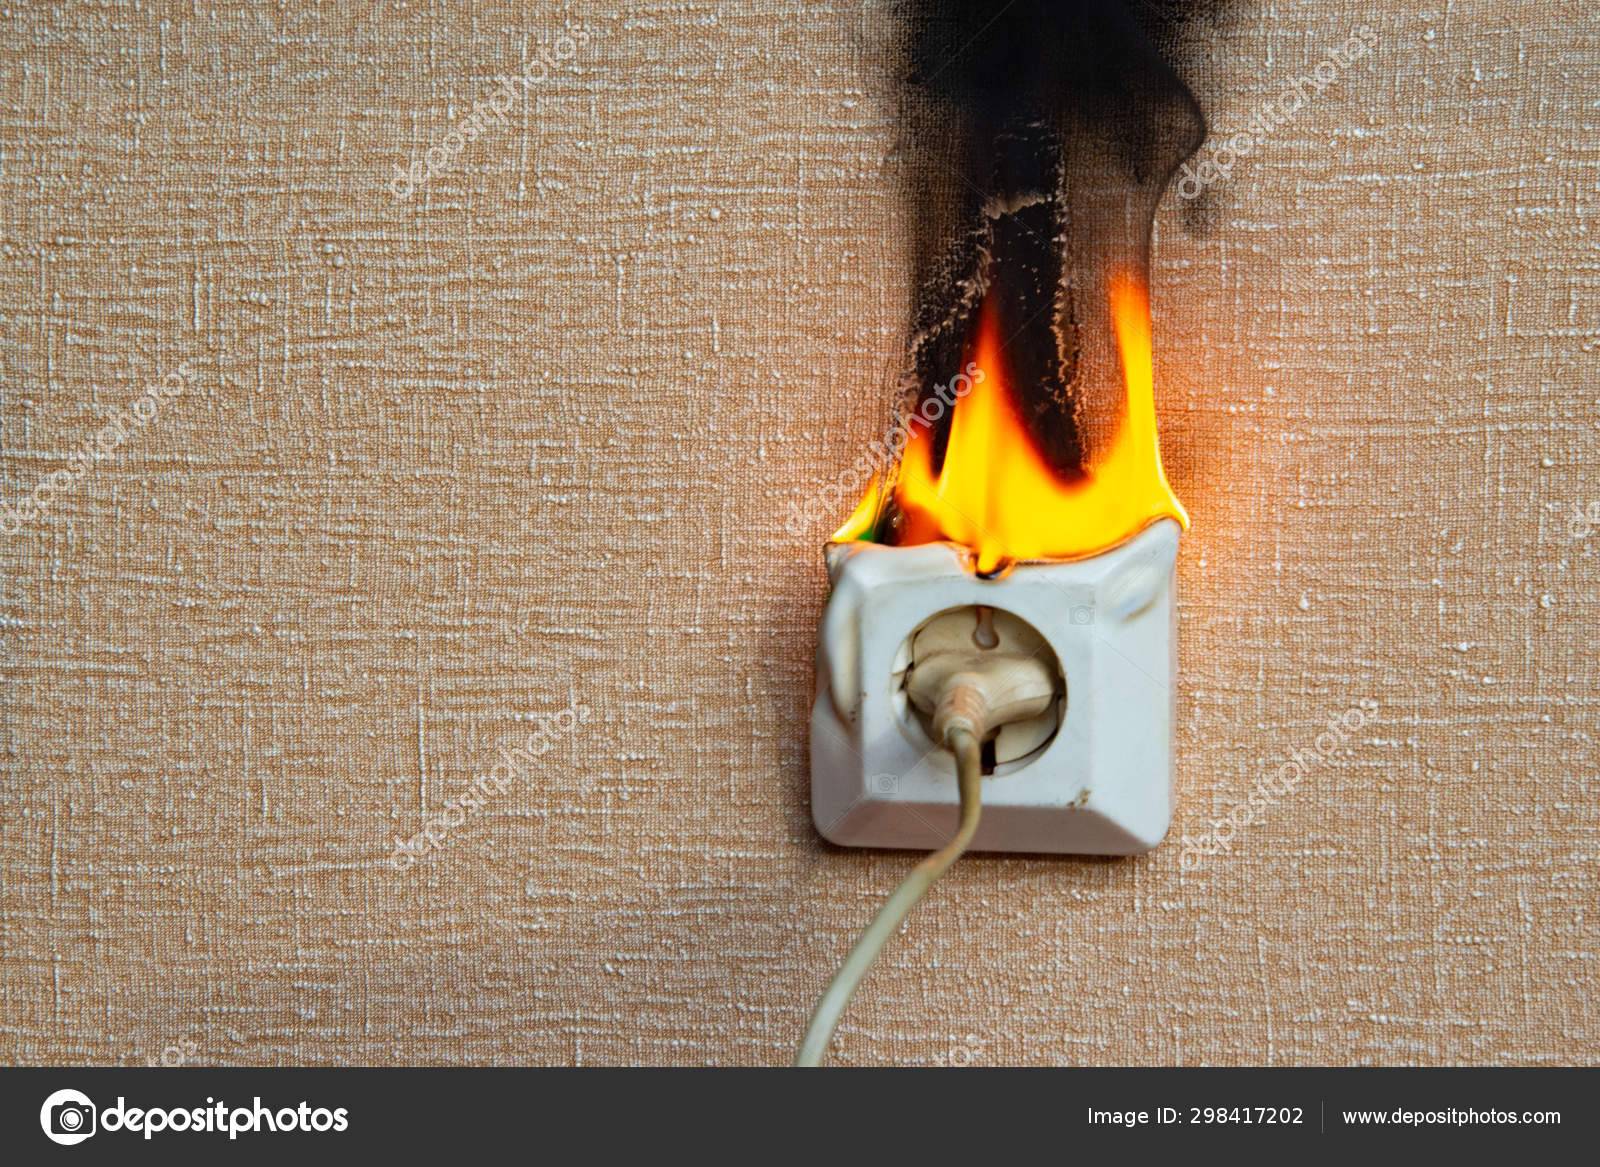 Порядок действий при возгорании электропроводки в квартире